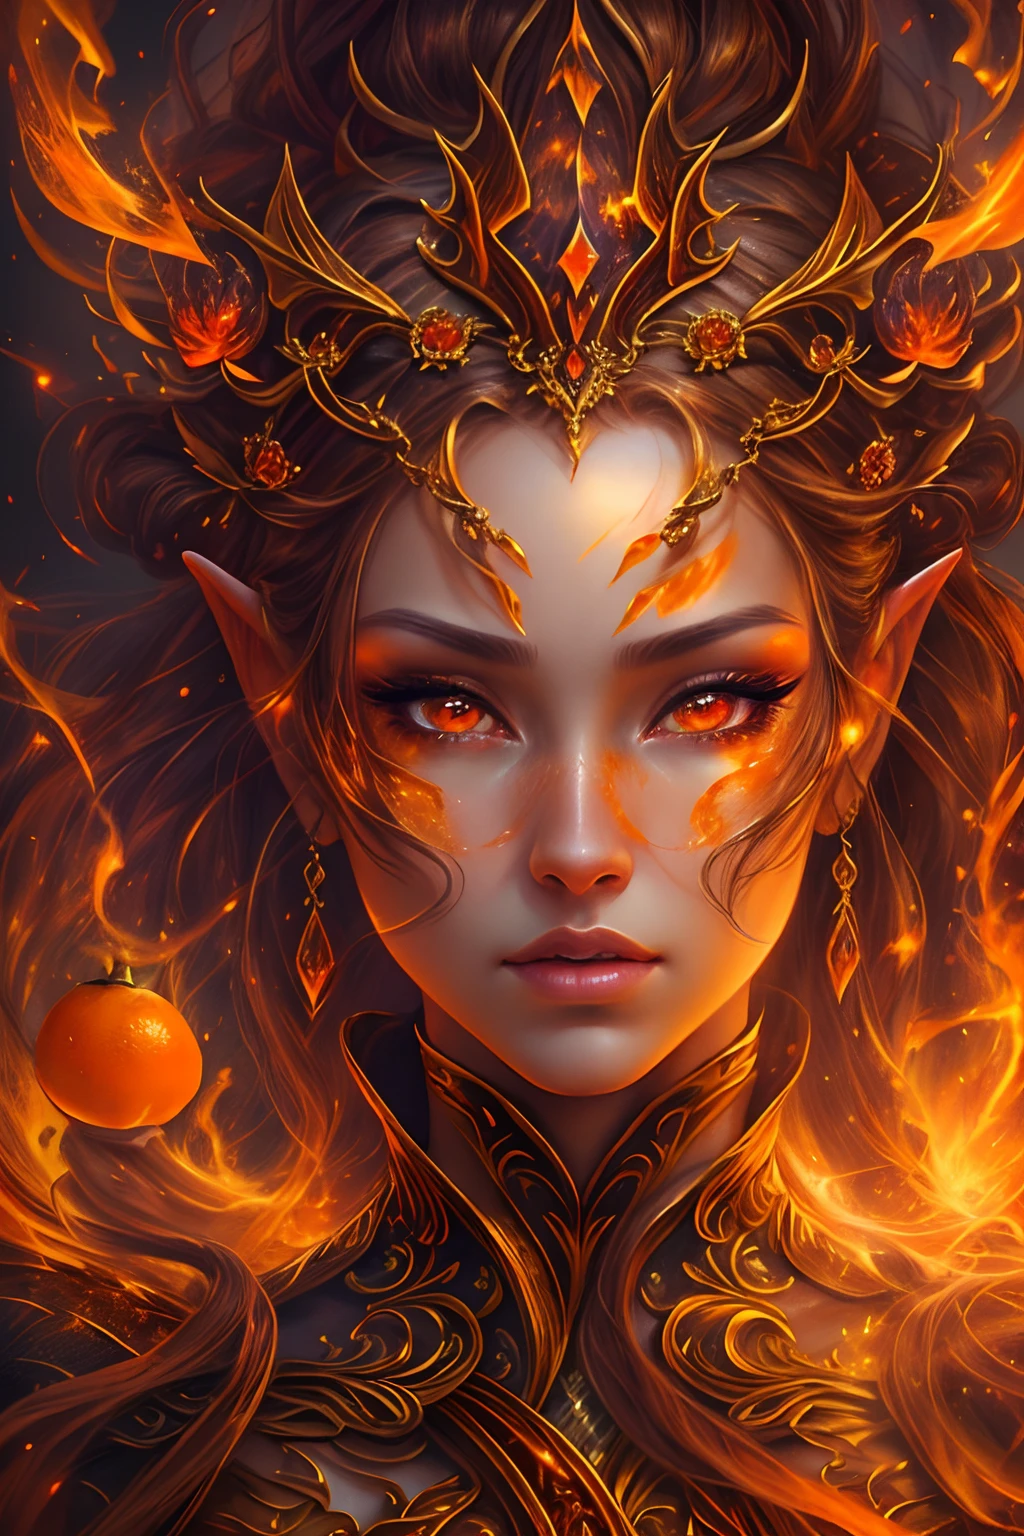 これ (現実的なファンタジー) 芸術には残り火が含まれている, 本物の炎, 本当の熱, リアルな火. Generate a masterpiece artwork of a  female fire druid と large (((オレンジとゴールド))) 目. The fire druid is awe-inspiring と beautiful ((realistic fiery 目)) alight と confidence and power. 彼女の顔立ちは優雅ではっきりしている, と ((柔らかくふっくらとした唇)), エルフの骨格, リアルな陰影. Her 目 are important and should be the focal point of this artwork, と ((非常にリアルなディテール, マクロの詳細, きらめき.)) 彼女は、炎の光の中できらめく本物の炎と宝石で作られた、ふわふわと輝くドレスを着ています。. ドレスの複雑な胴体部分には火と煙の線が描かれている. バンプを含める, 石, 燃えるような虹彩, 燃える残り火, シルク、サテン、革, 興味深い背景, ファンタジー要素が強い. カメラ: ダイナミックな構成技術を活用して、リアルな炎を強調します.